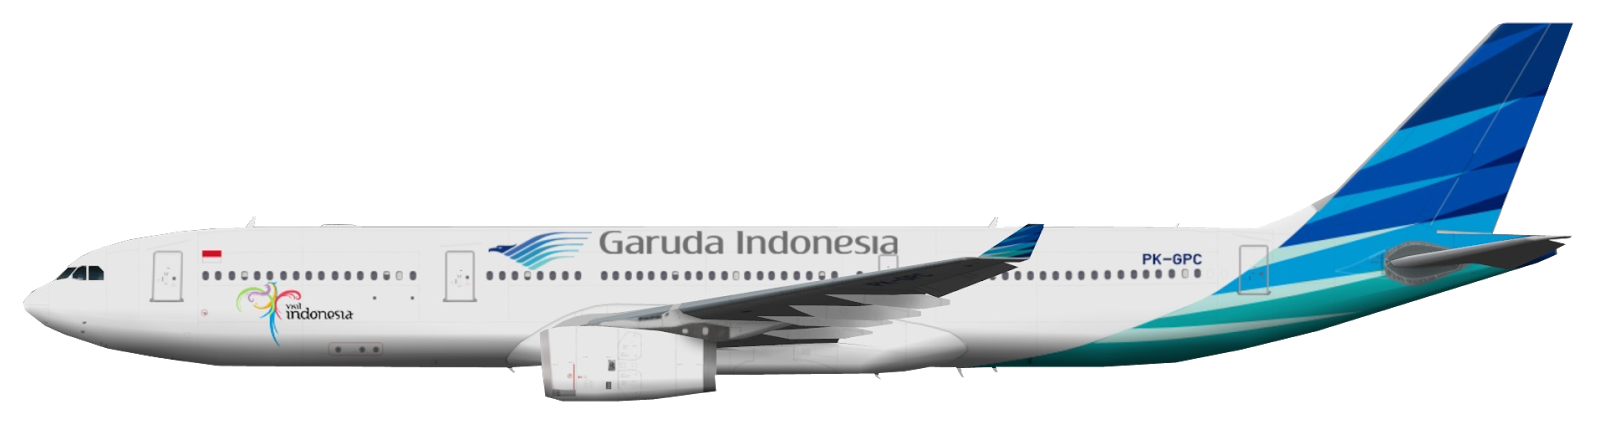 Lambang Garuda Indonesia Png Transparent Background Free Download Images